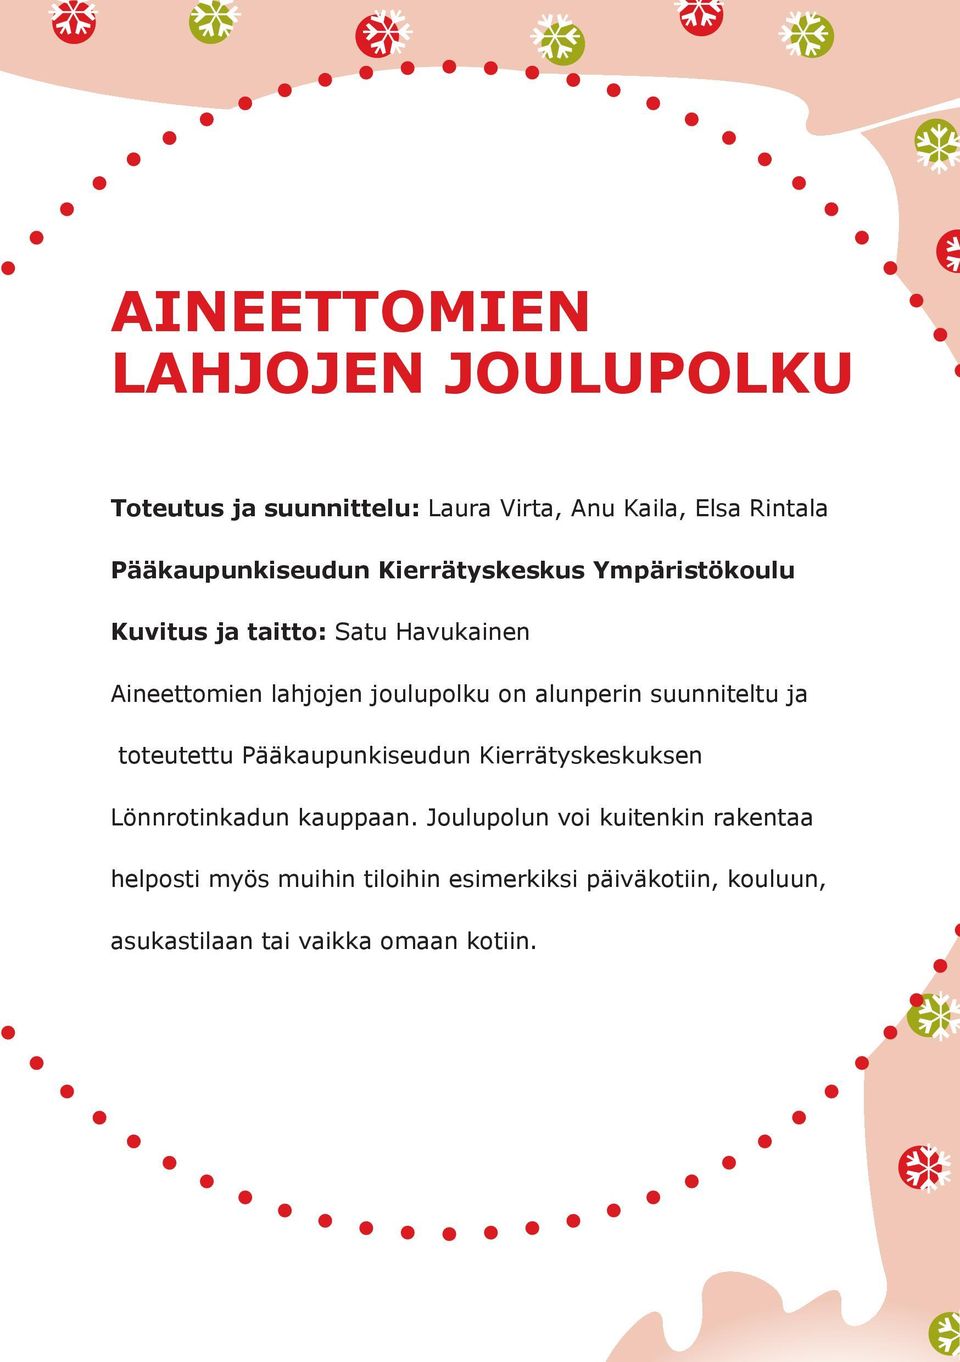 joulupolku on alunperin suunniteltu ja toteutettu Pääkaupunkiseudun Kierrätyskeskuksen Lönnrotinkadun kauppaan.